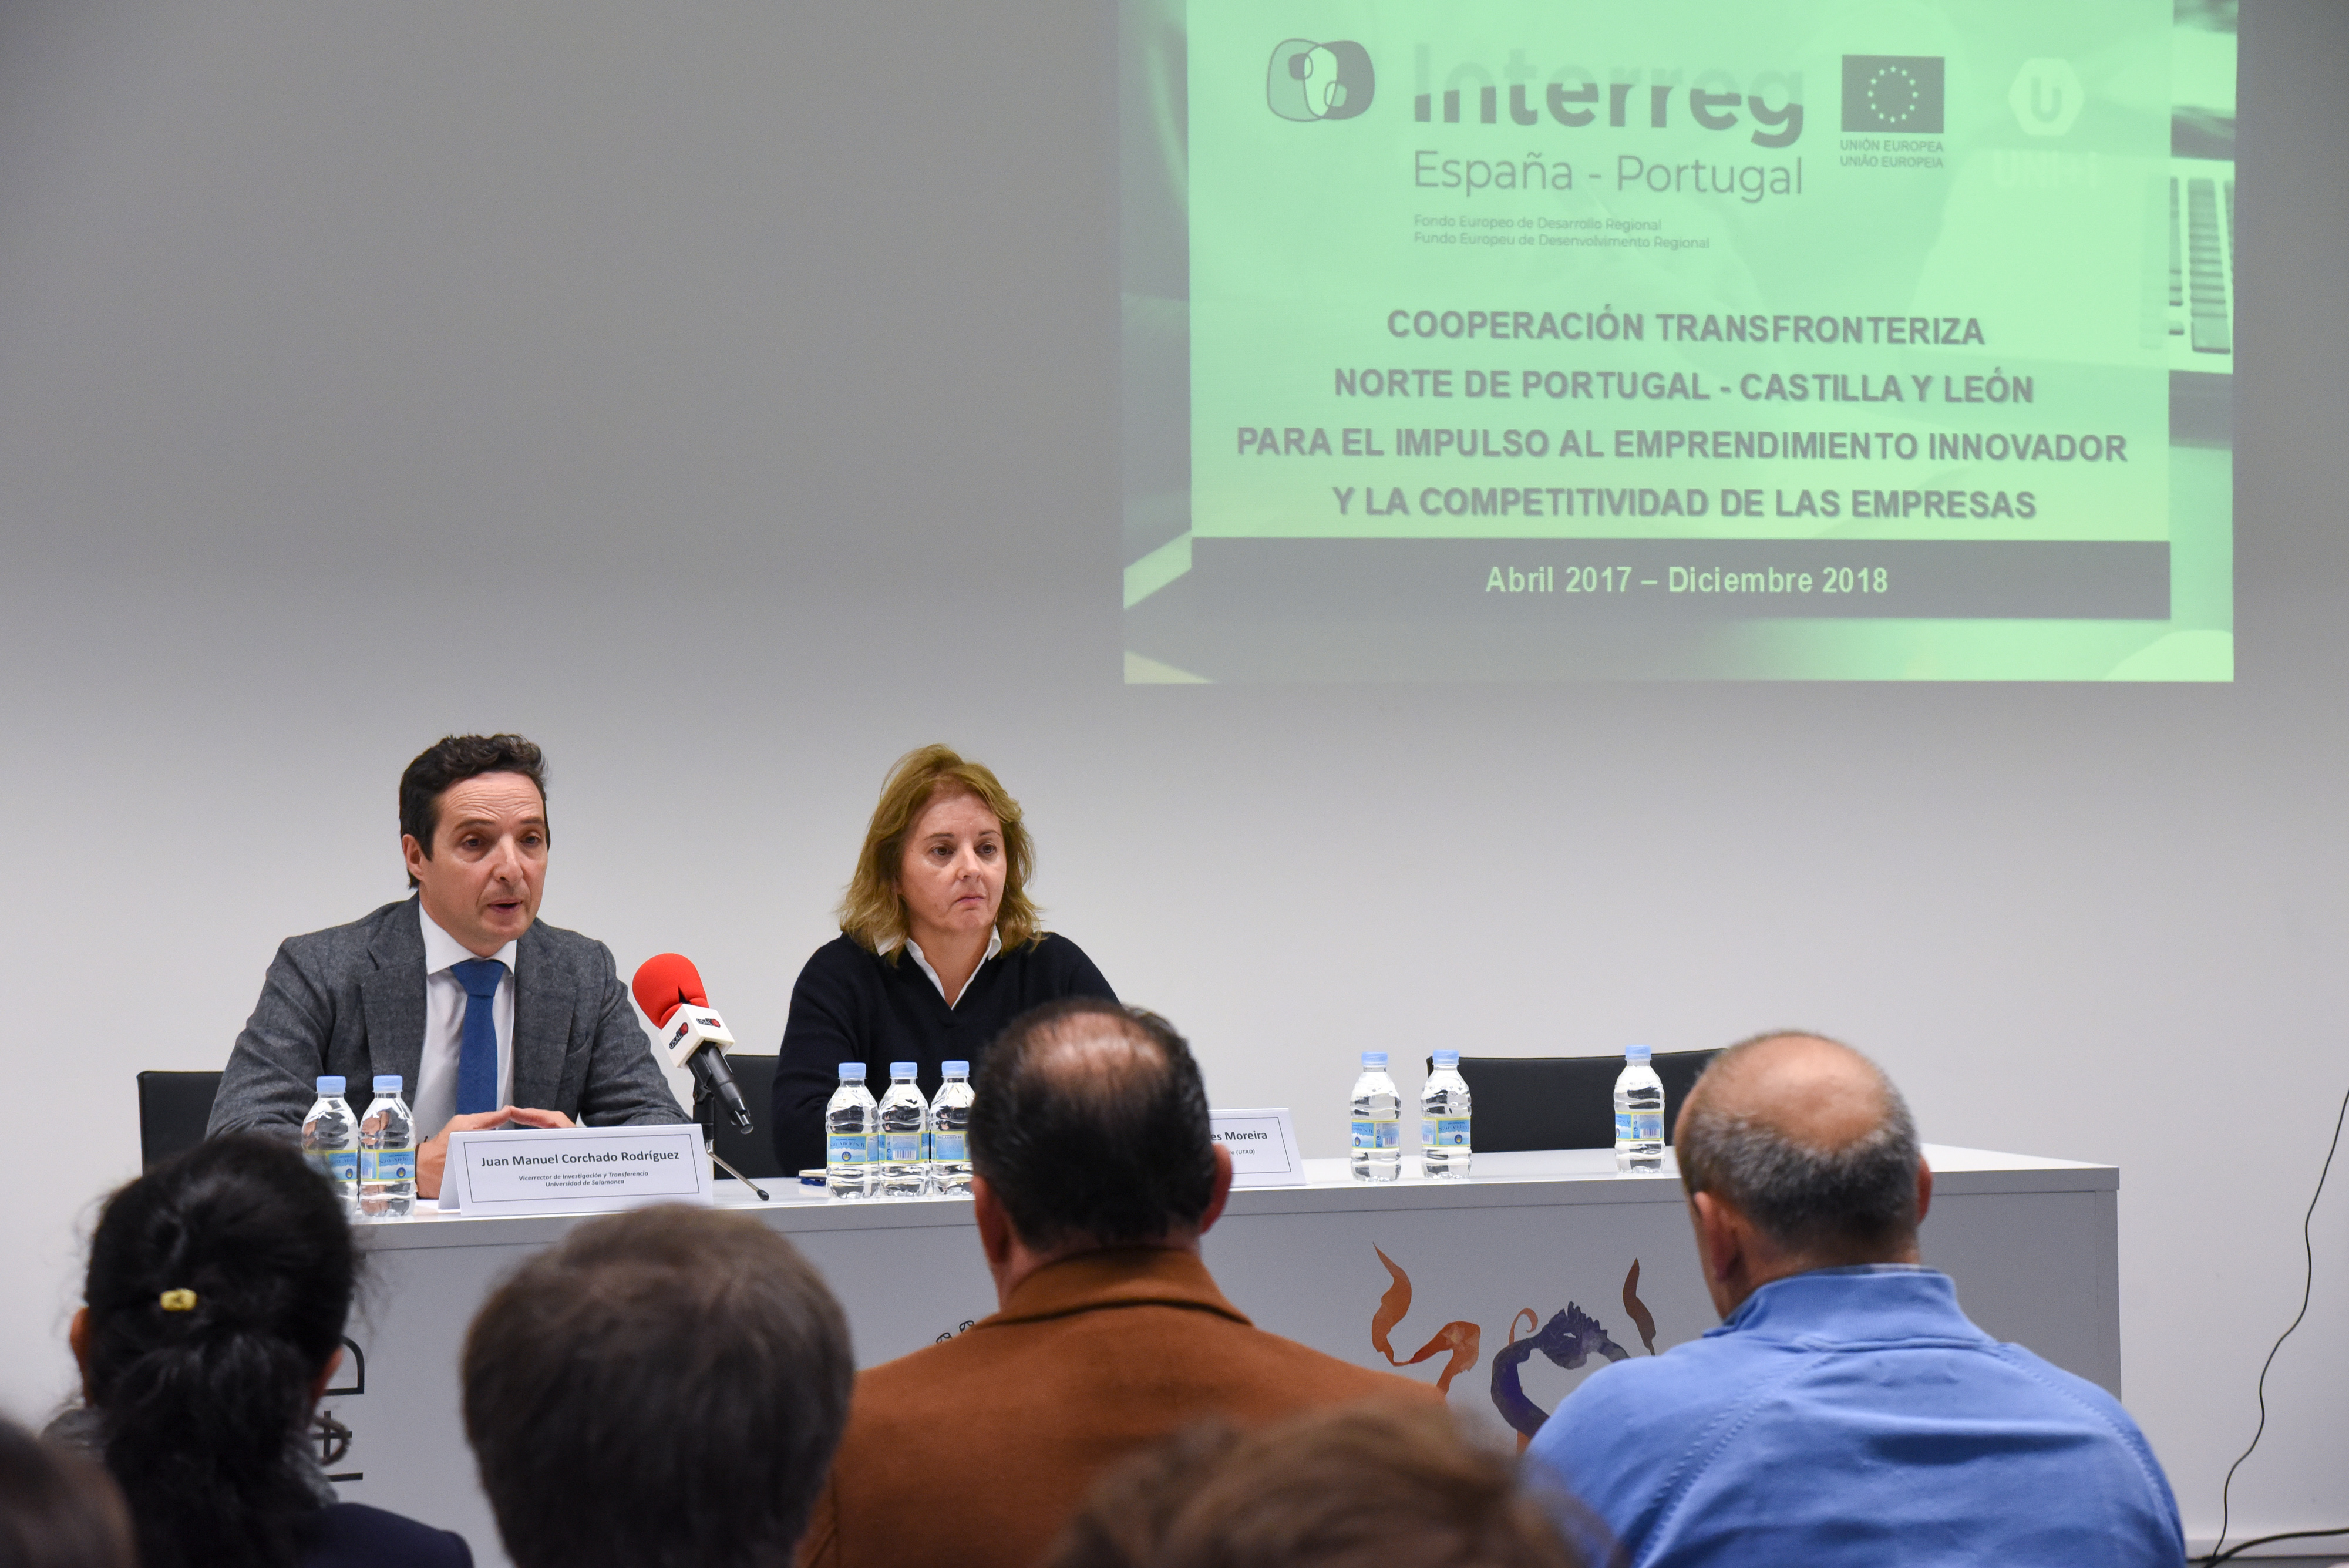 La Universidad de Salamanca acoge la presentación de un proyecto para el impulso del emprendimiento en España y Portugal 